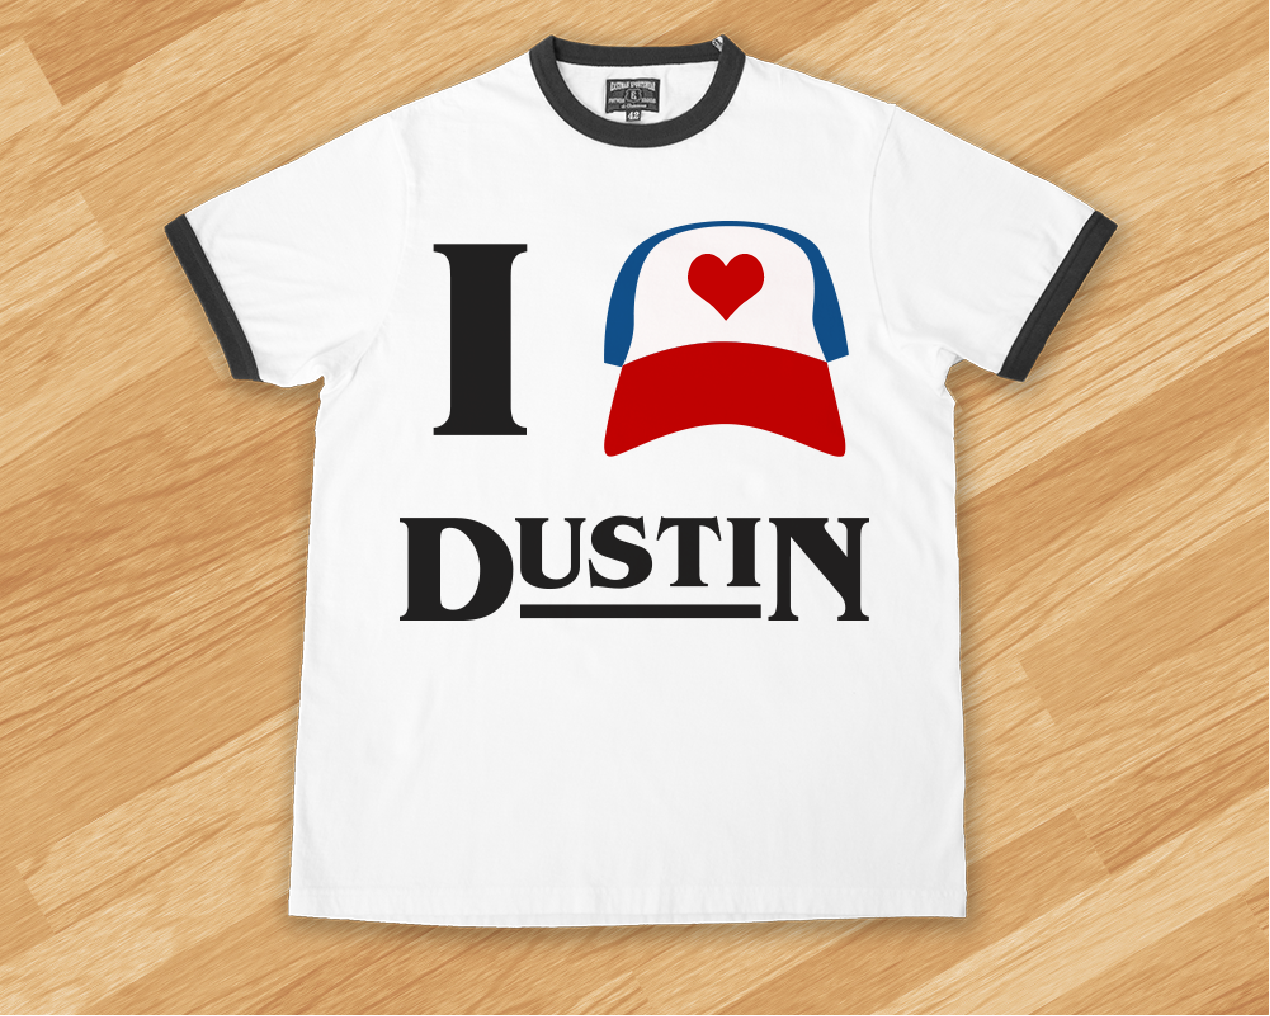 I heart dustin design